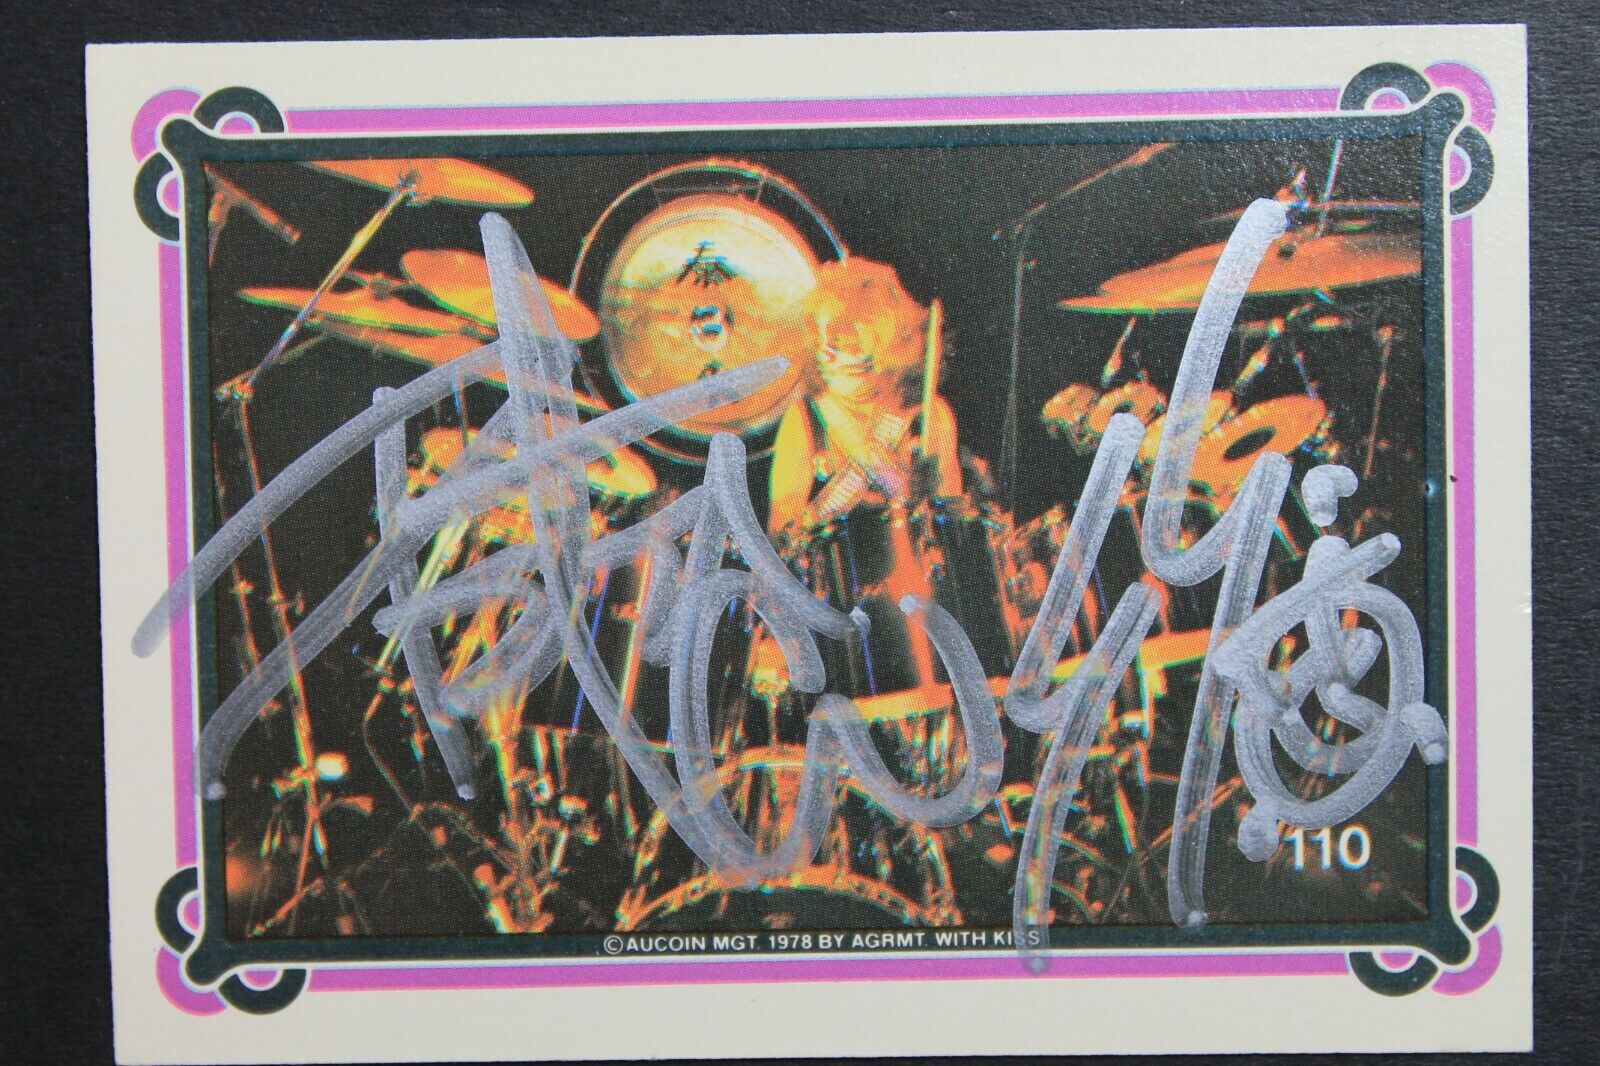 Peter Criss KISS Drummer CAT Autographed 1978 Donruss #110 Signed Aucoin Card